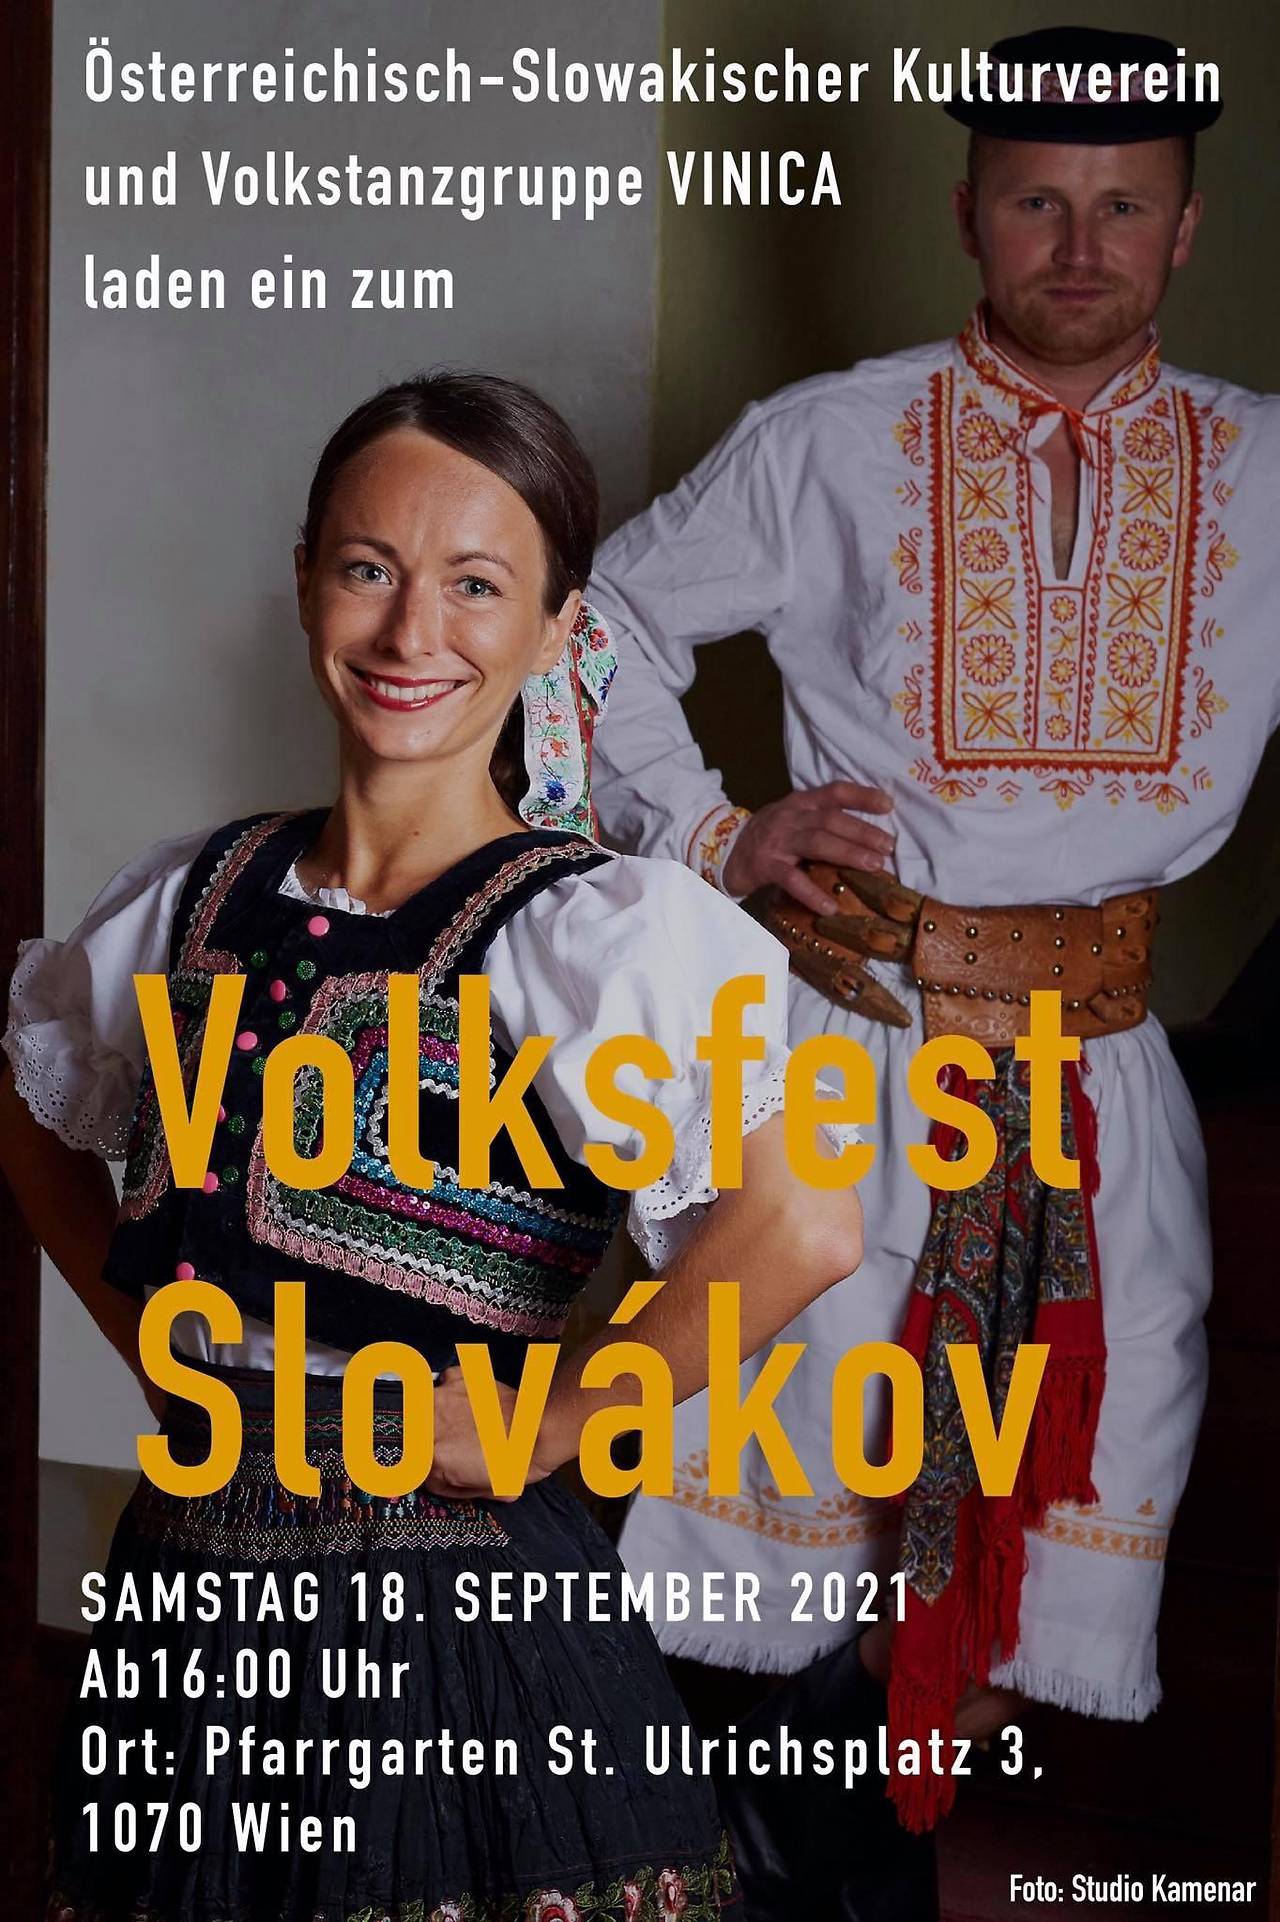 NOV - - - Volksfest Slovkov vo Viedni 2021 - 2. ronk